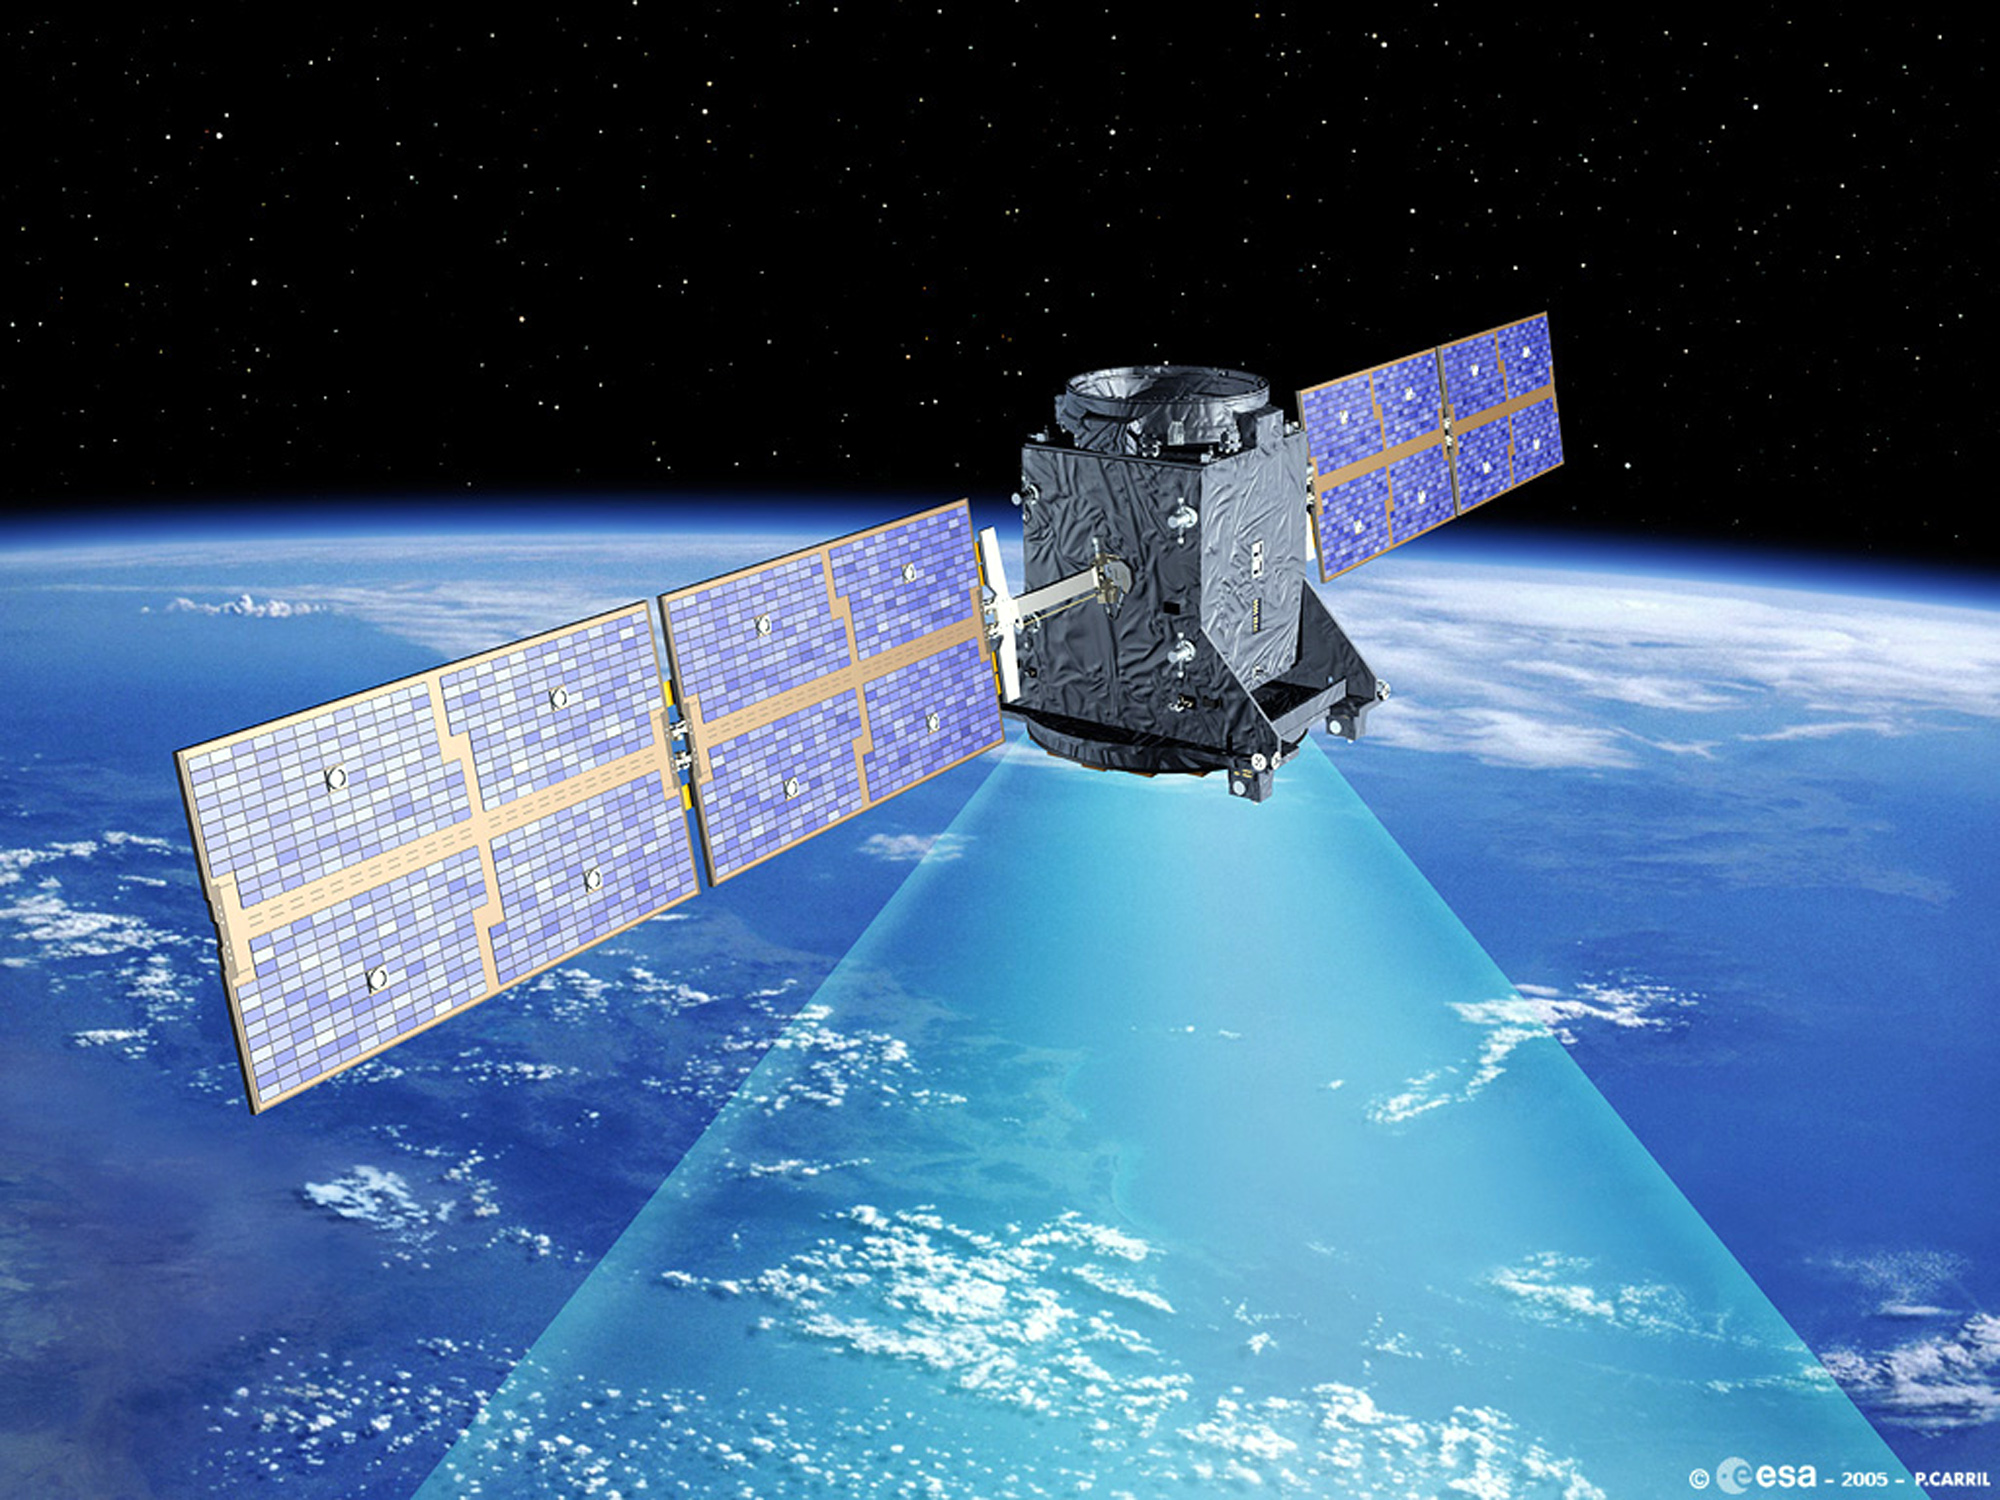 Satellitenabschuss macht China Sorgen